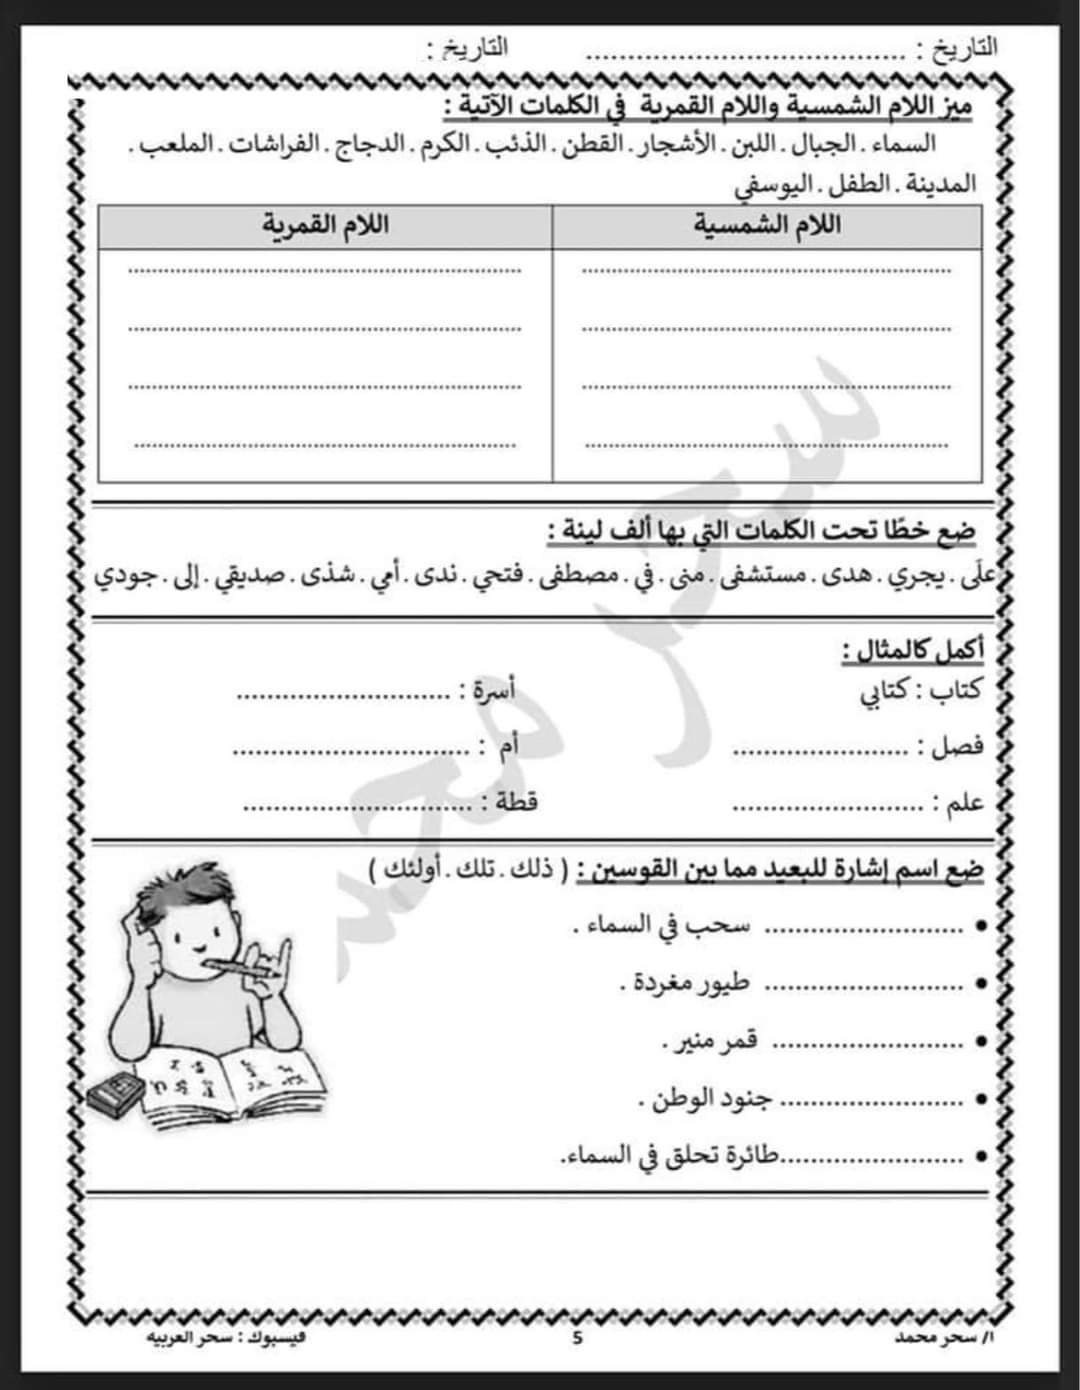 مذكرة اللغة العربية للصف الثالث الابتدائي - 2021